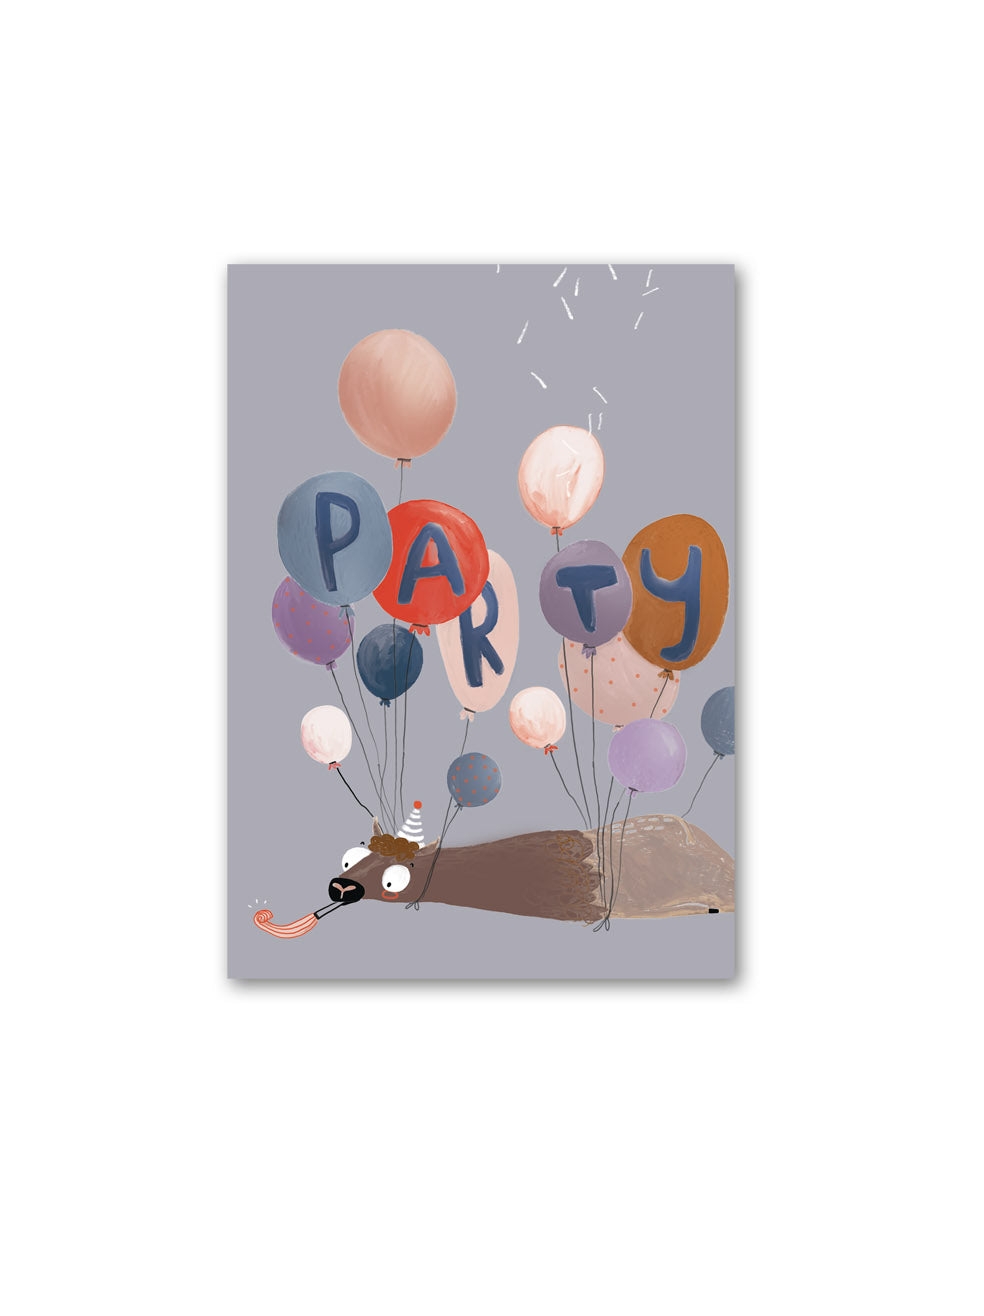 bunte Postkarte mit liegendem lama an dem viele Luftballons hängen und darin steht party, das lama bläst eine tröte und trägt einen partyhut